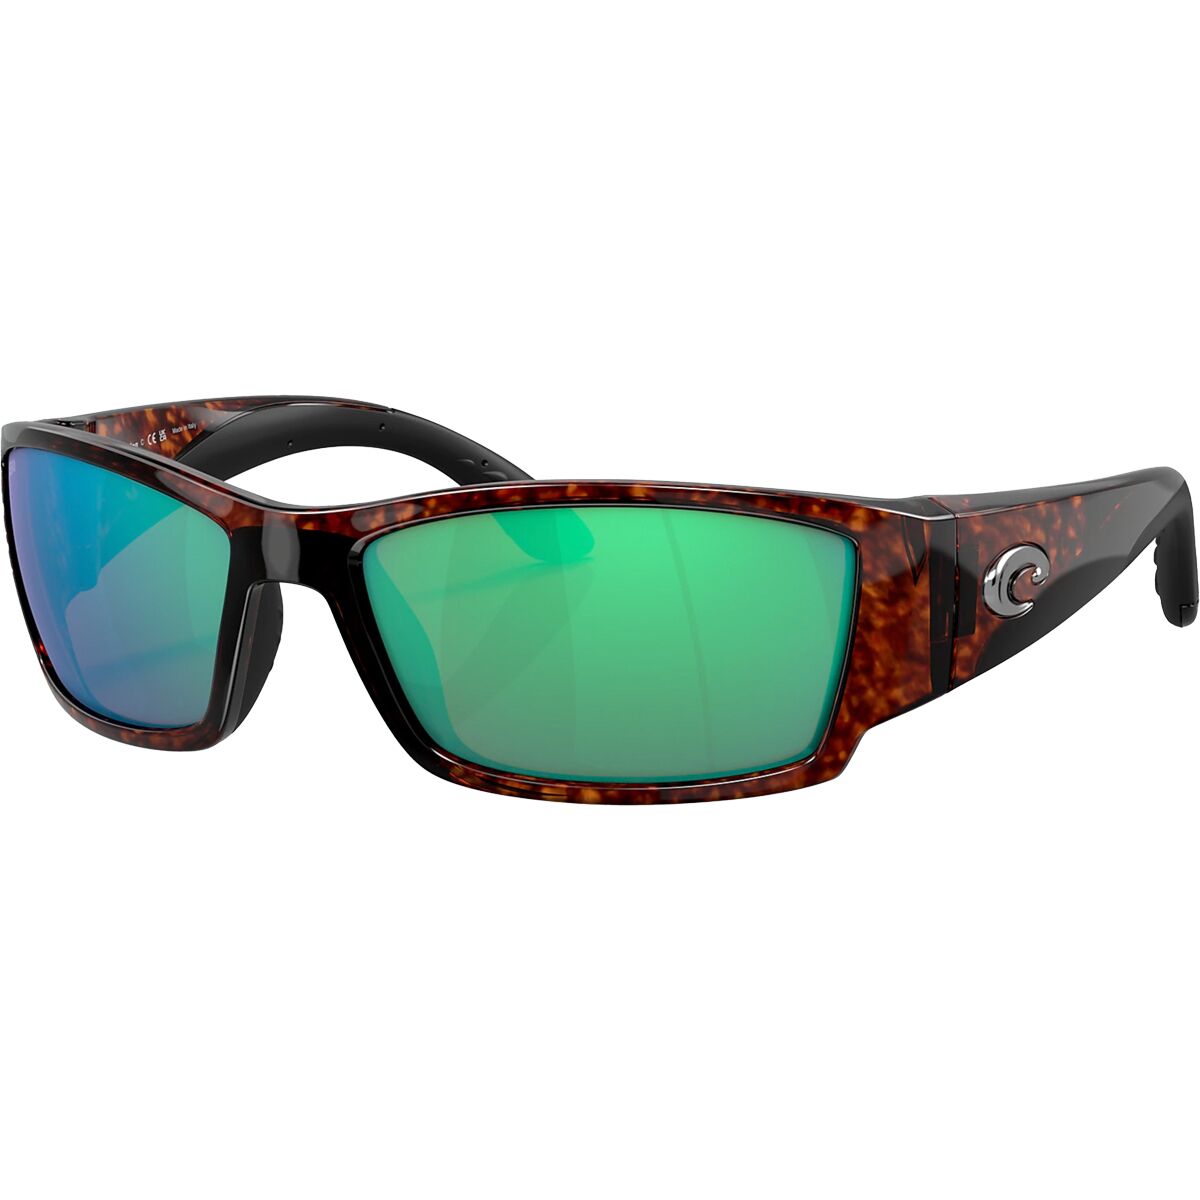 Pre-owned Costa Del Mar Costa Corbina 580g Polarized Sunglasses In Tortoise/green Mirror